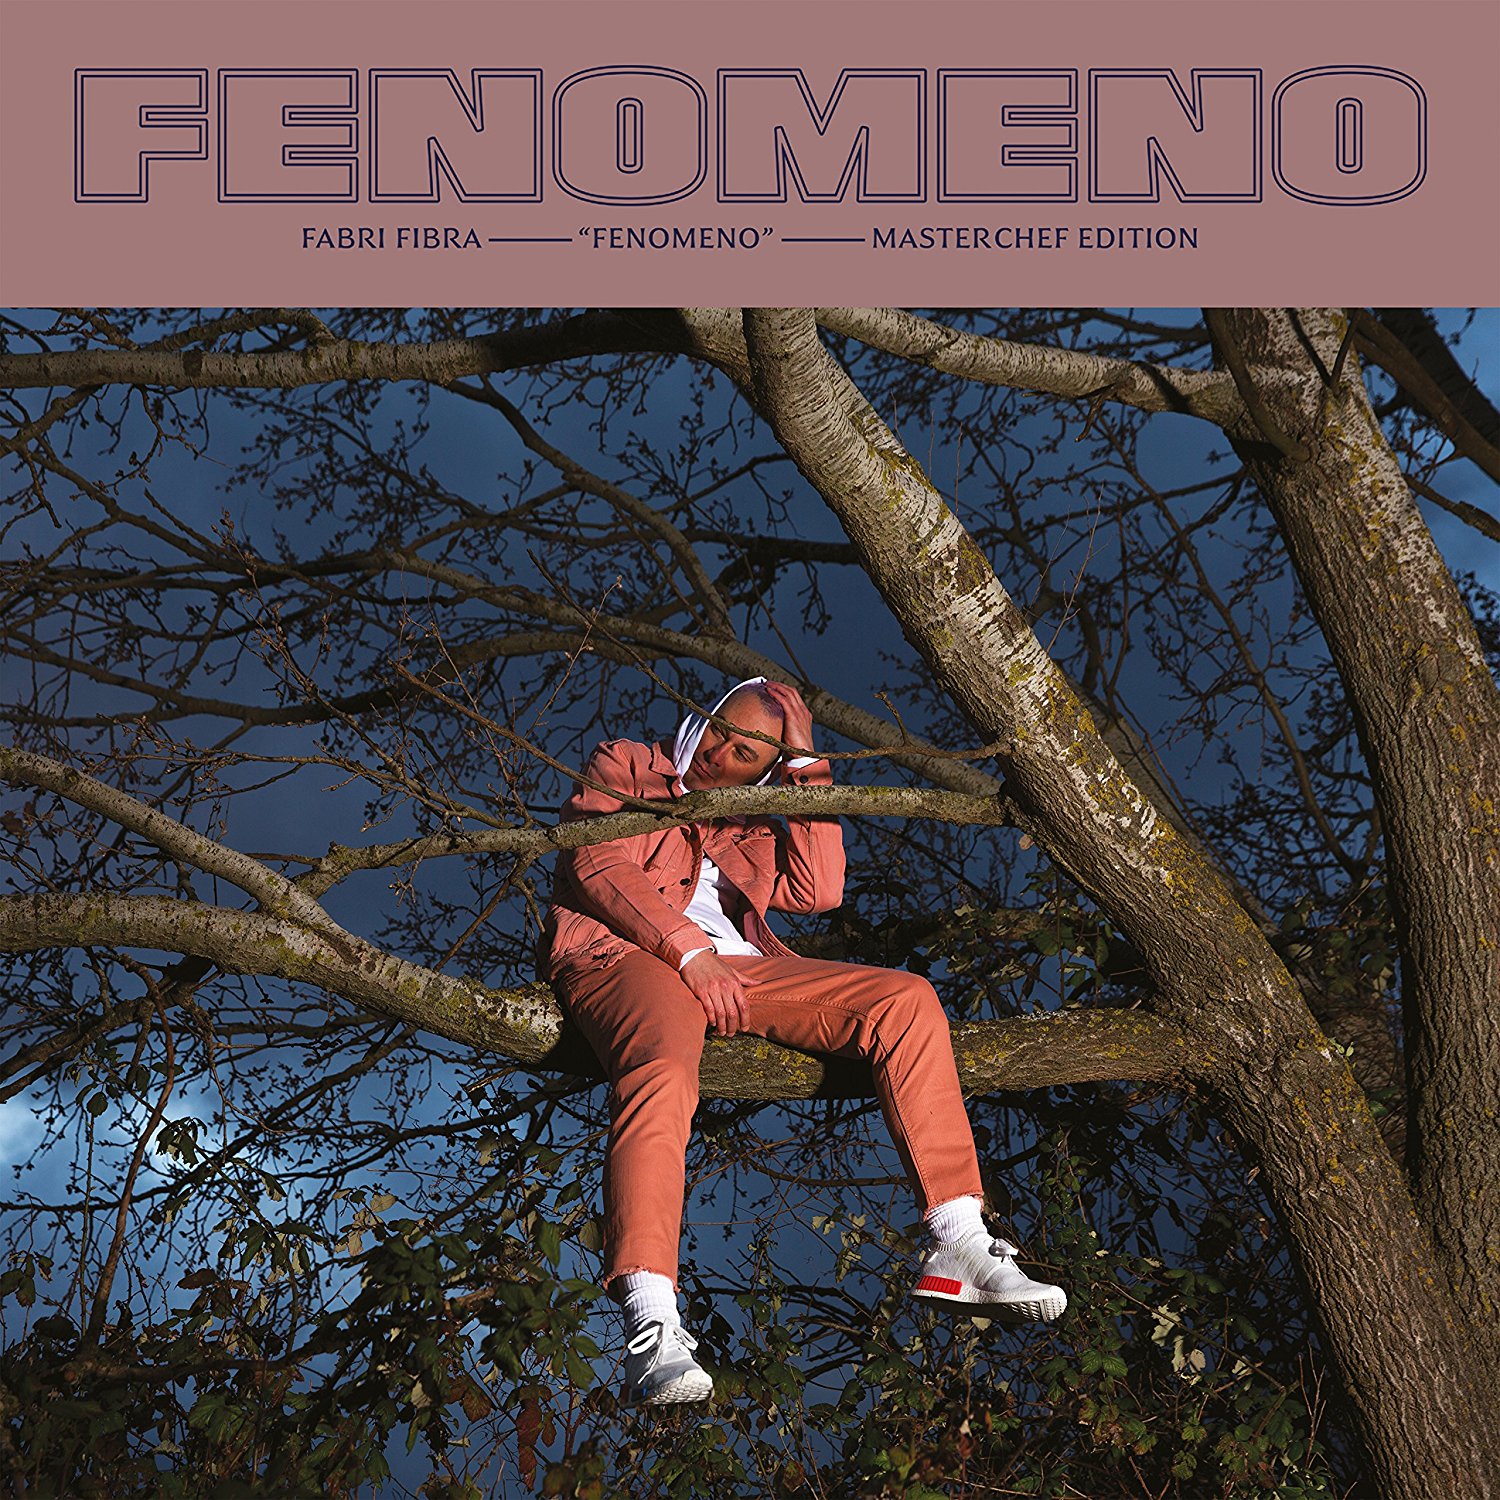 FENOMENO (MASTERCHEF EDITION)